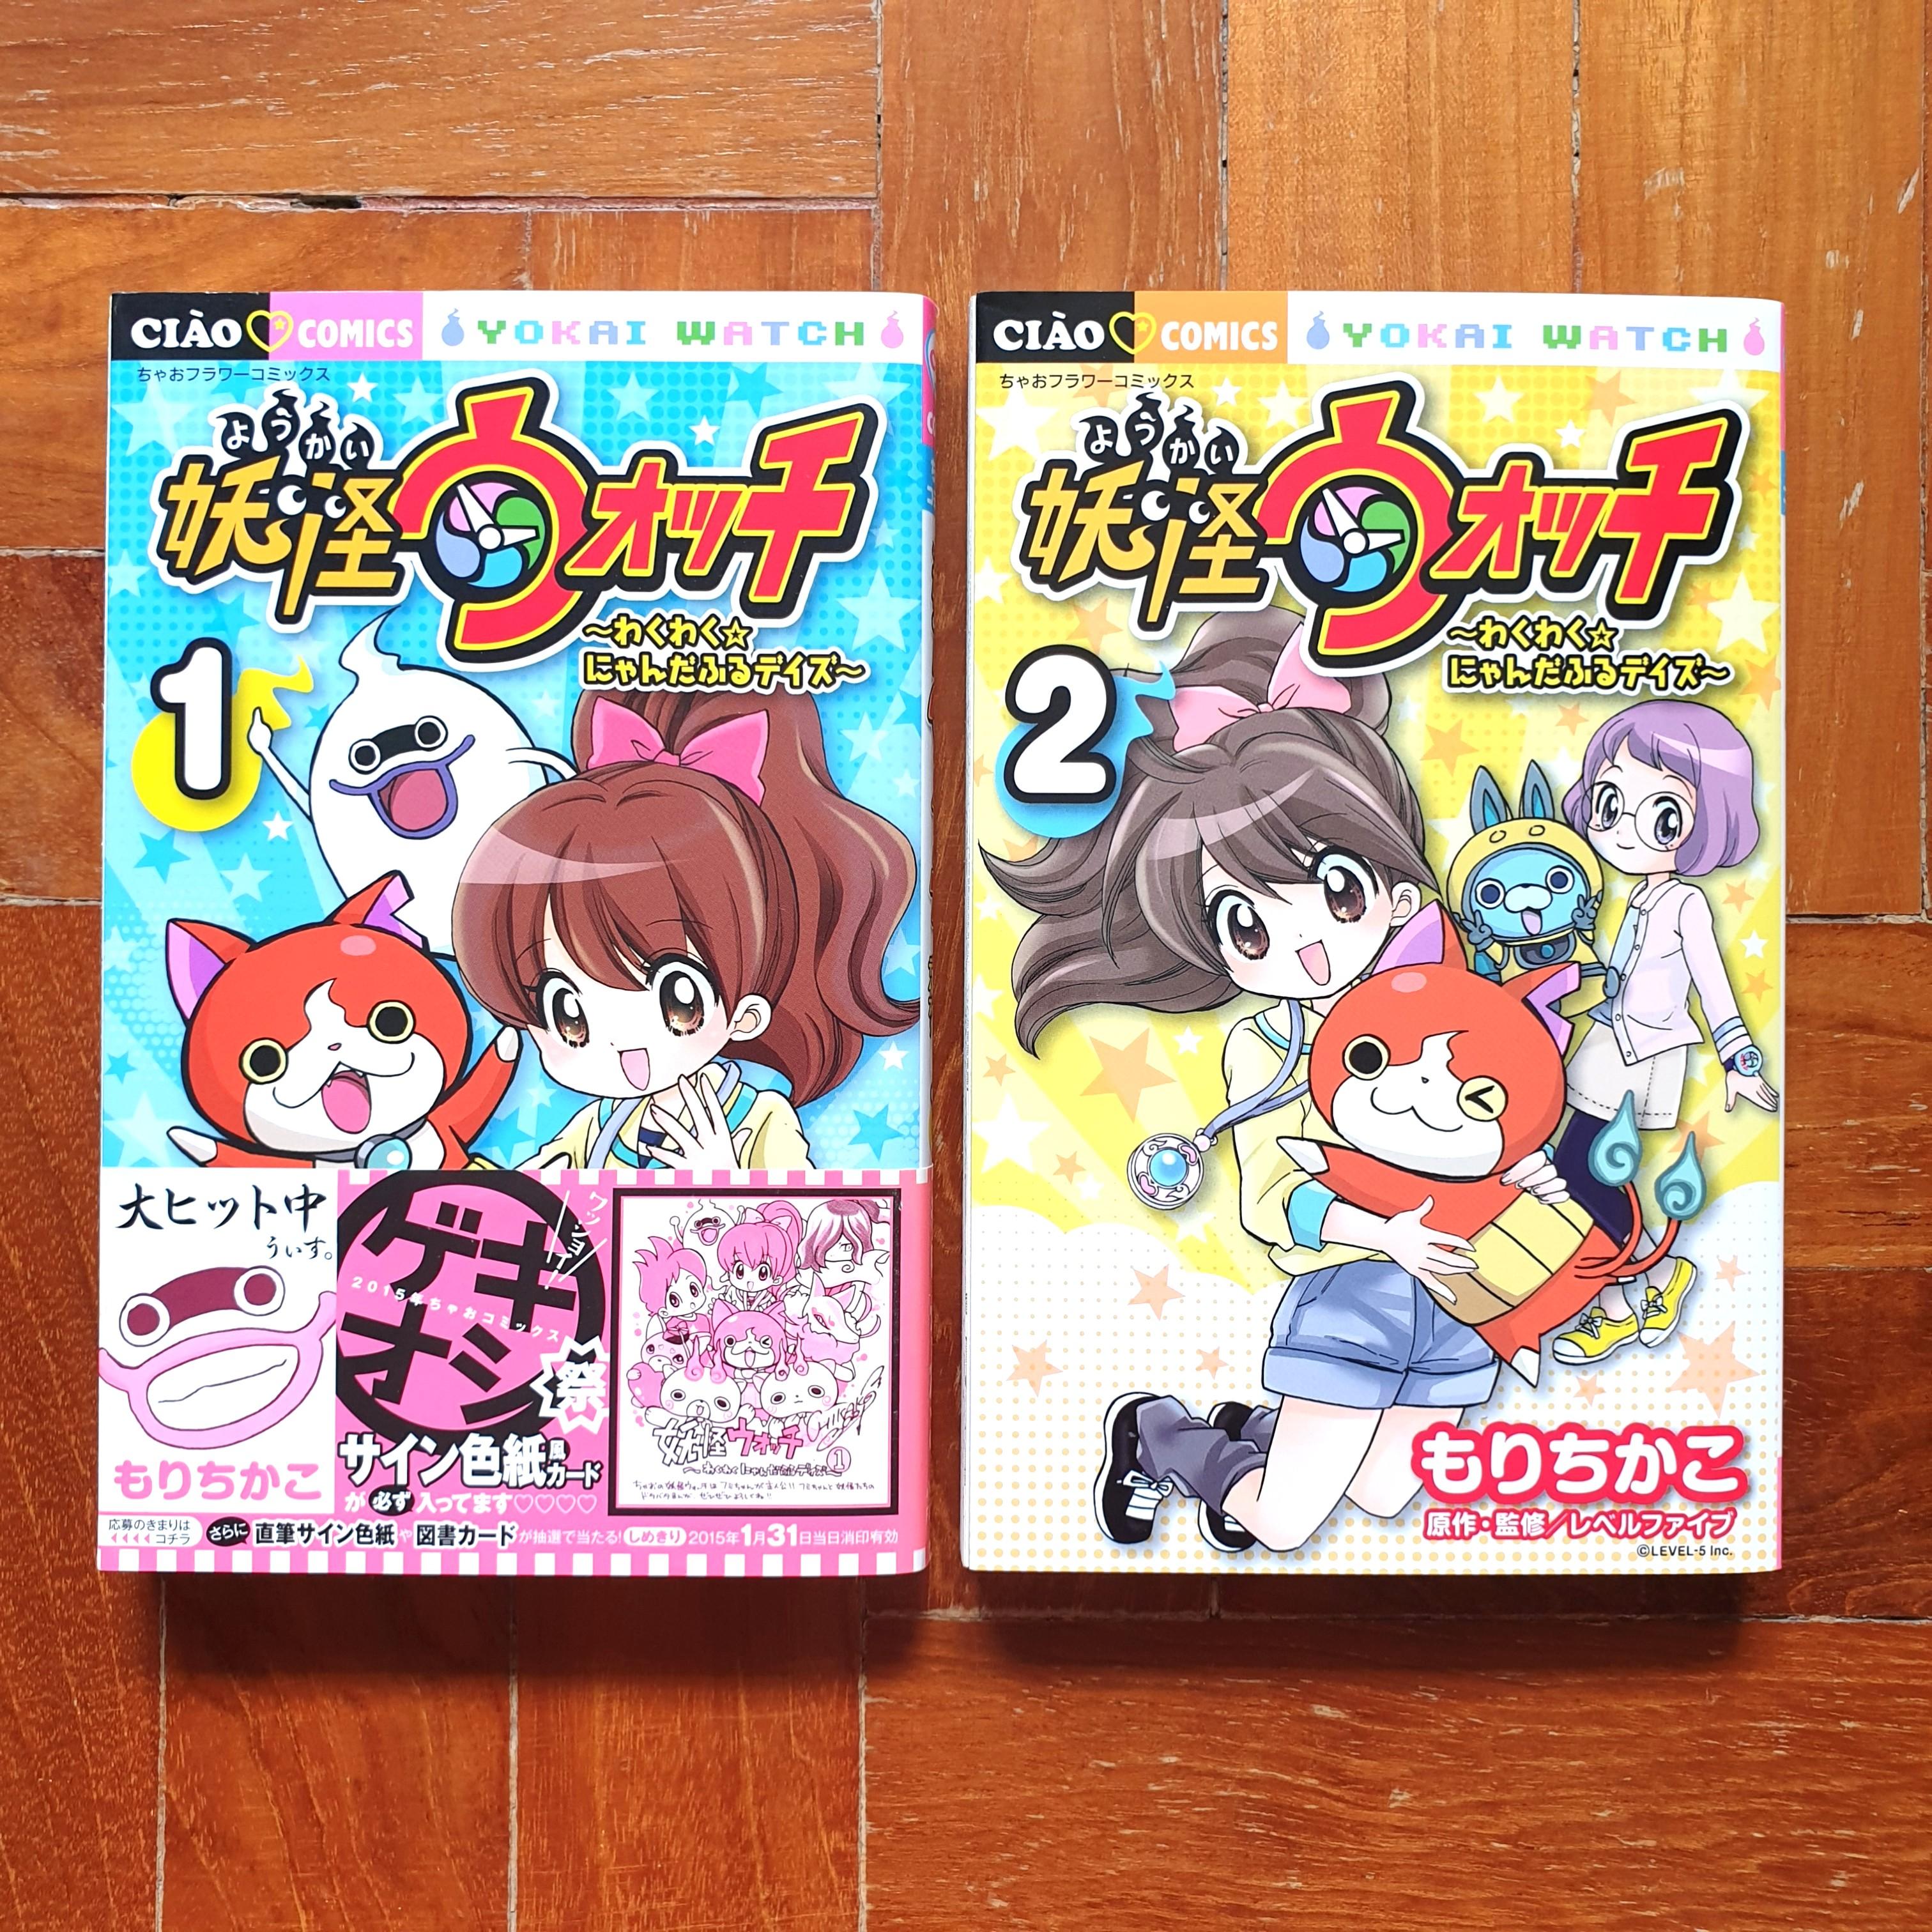 妖怪ウォッチ わかわく にゃんだふるデイズ 1 2 Japanese Manga By もりちかこ Hobbies Toys Books Magazines Comics Manga On Carousell